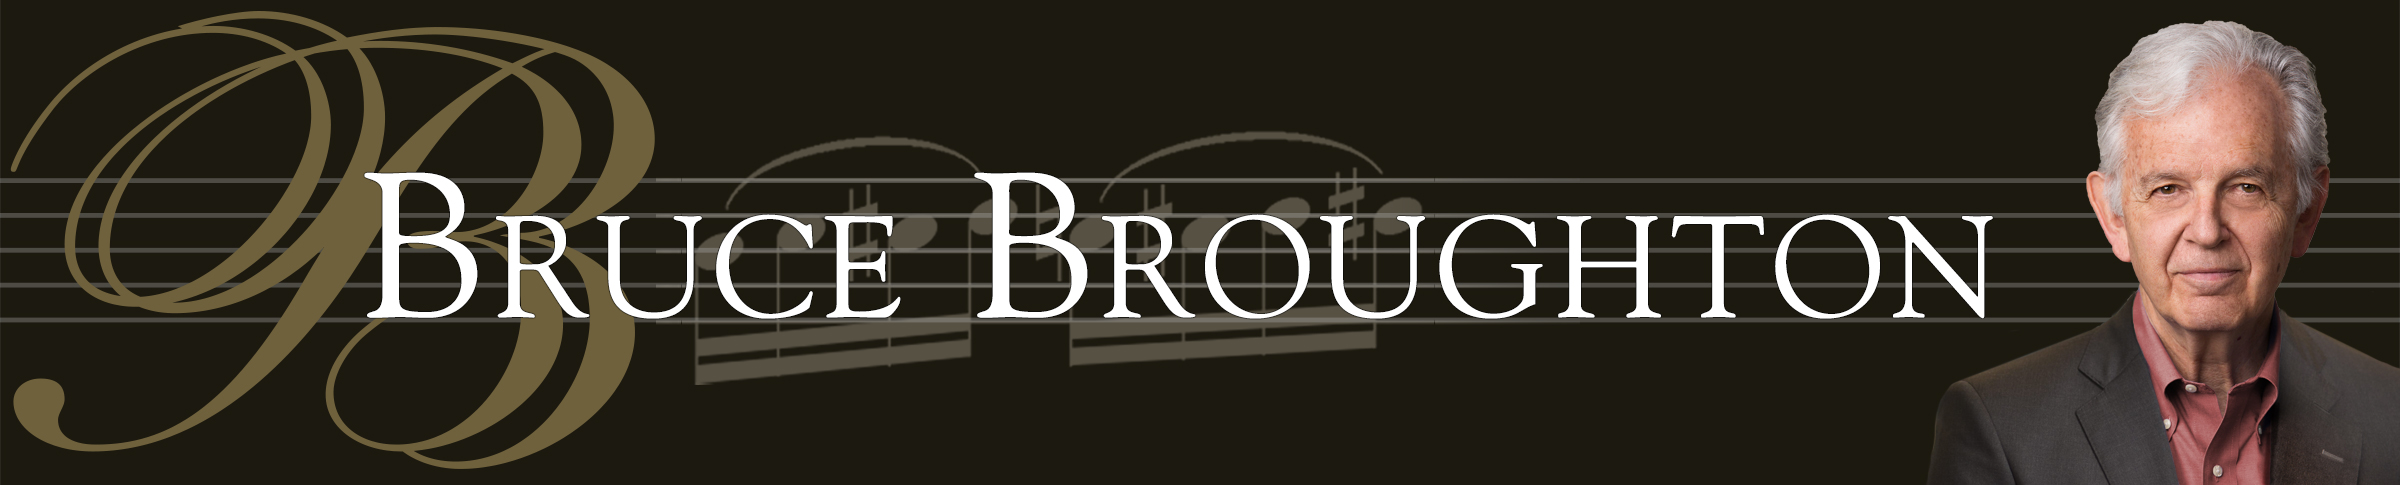 Bruce Broughton - 